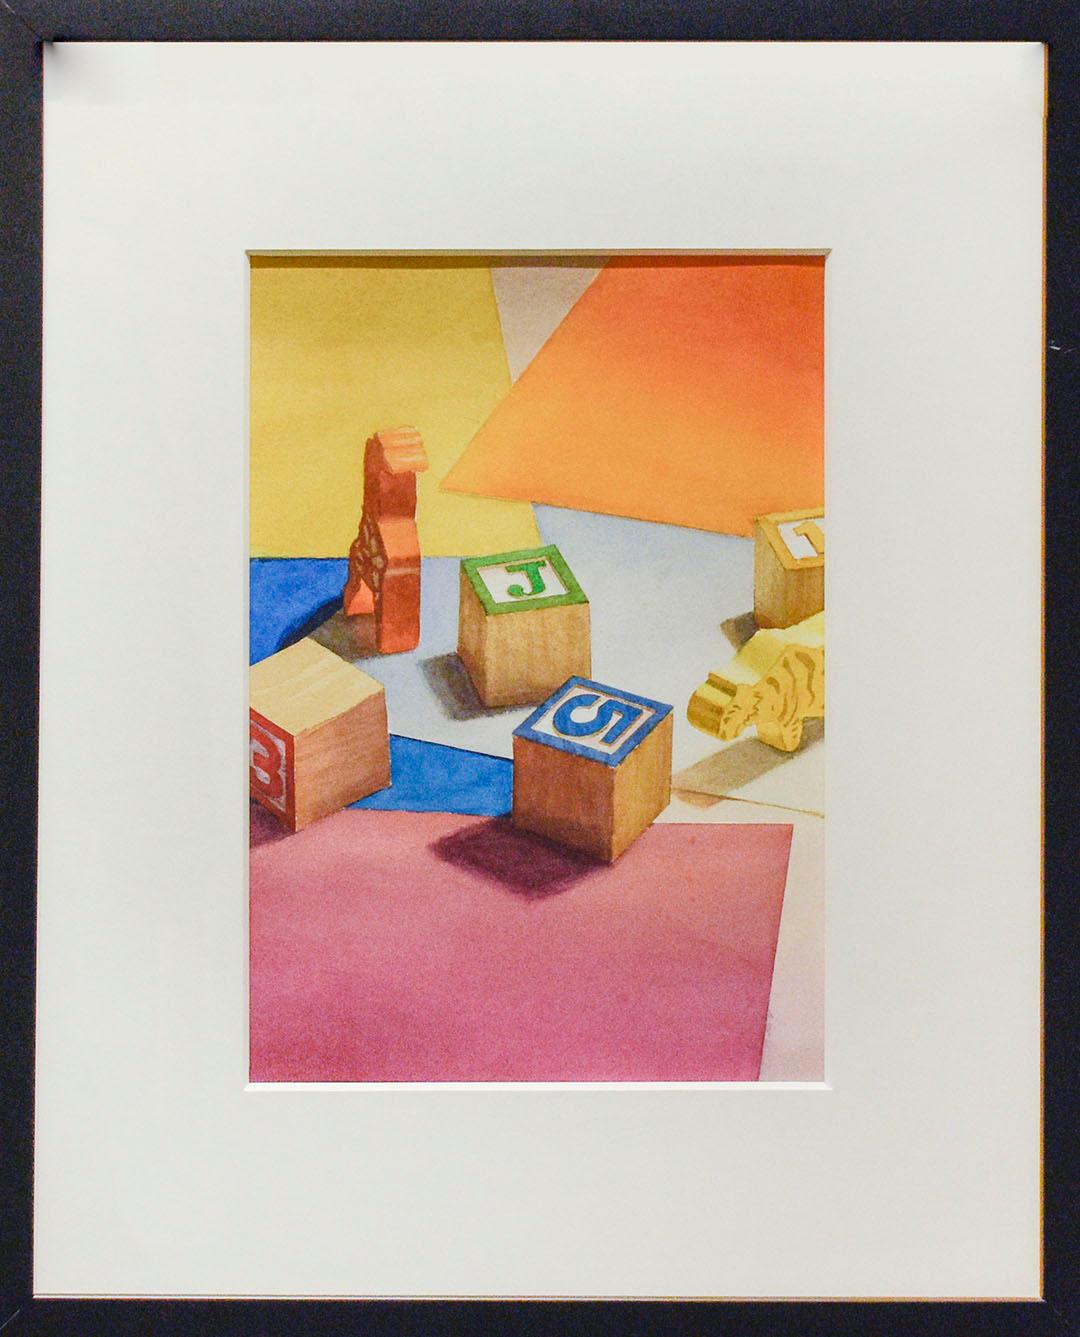 Spielzeug (Fotorealistisches Aquarell- Pop-Art-Gemälde mit bunten Holz-Kinderblöcken) – Painting von Scott Nelson Foster